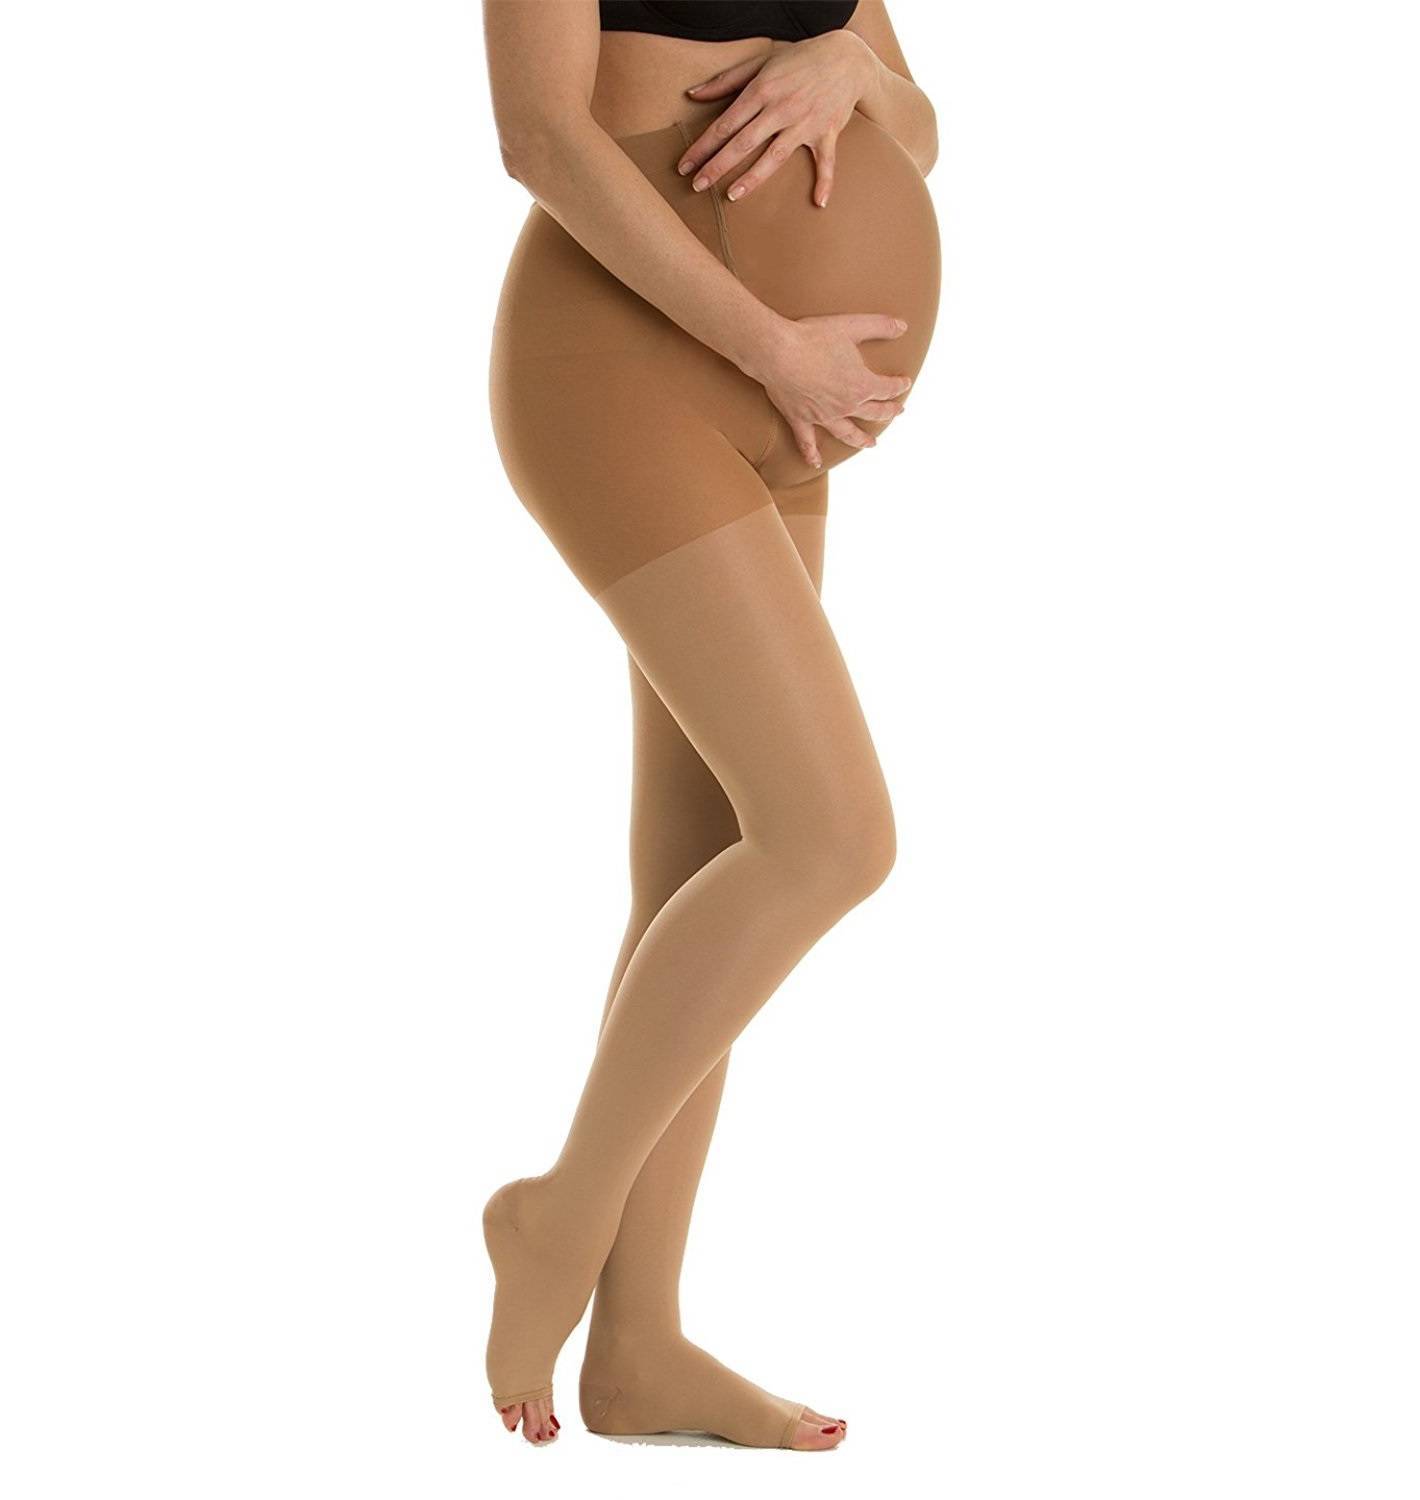 Колготки для беременных. Как правильно одевать колготки беременным. Как одеть колготки беременным на животе.